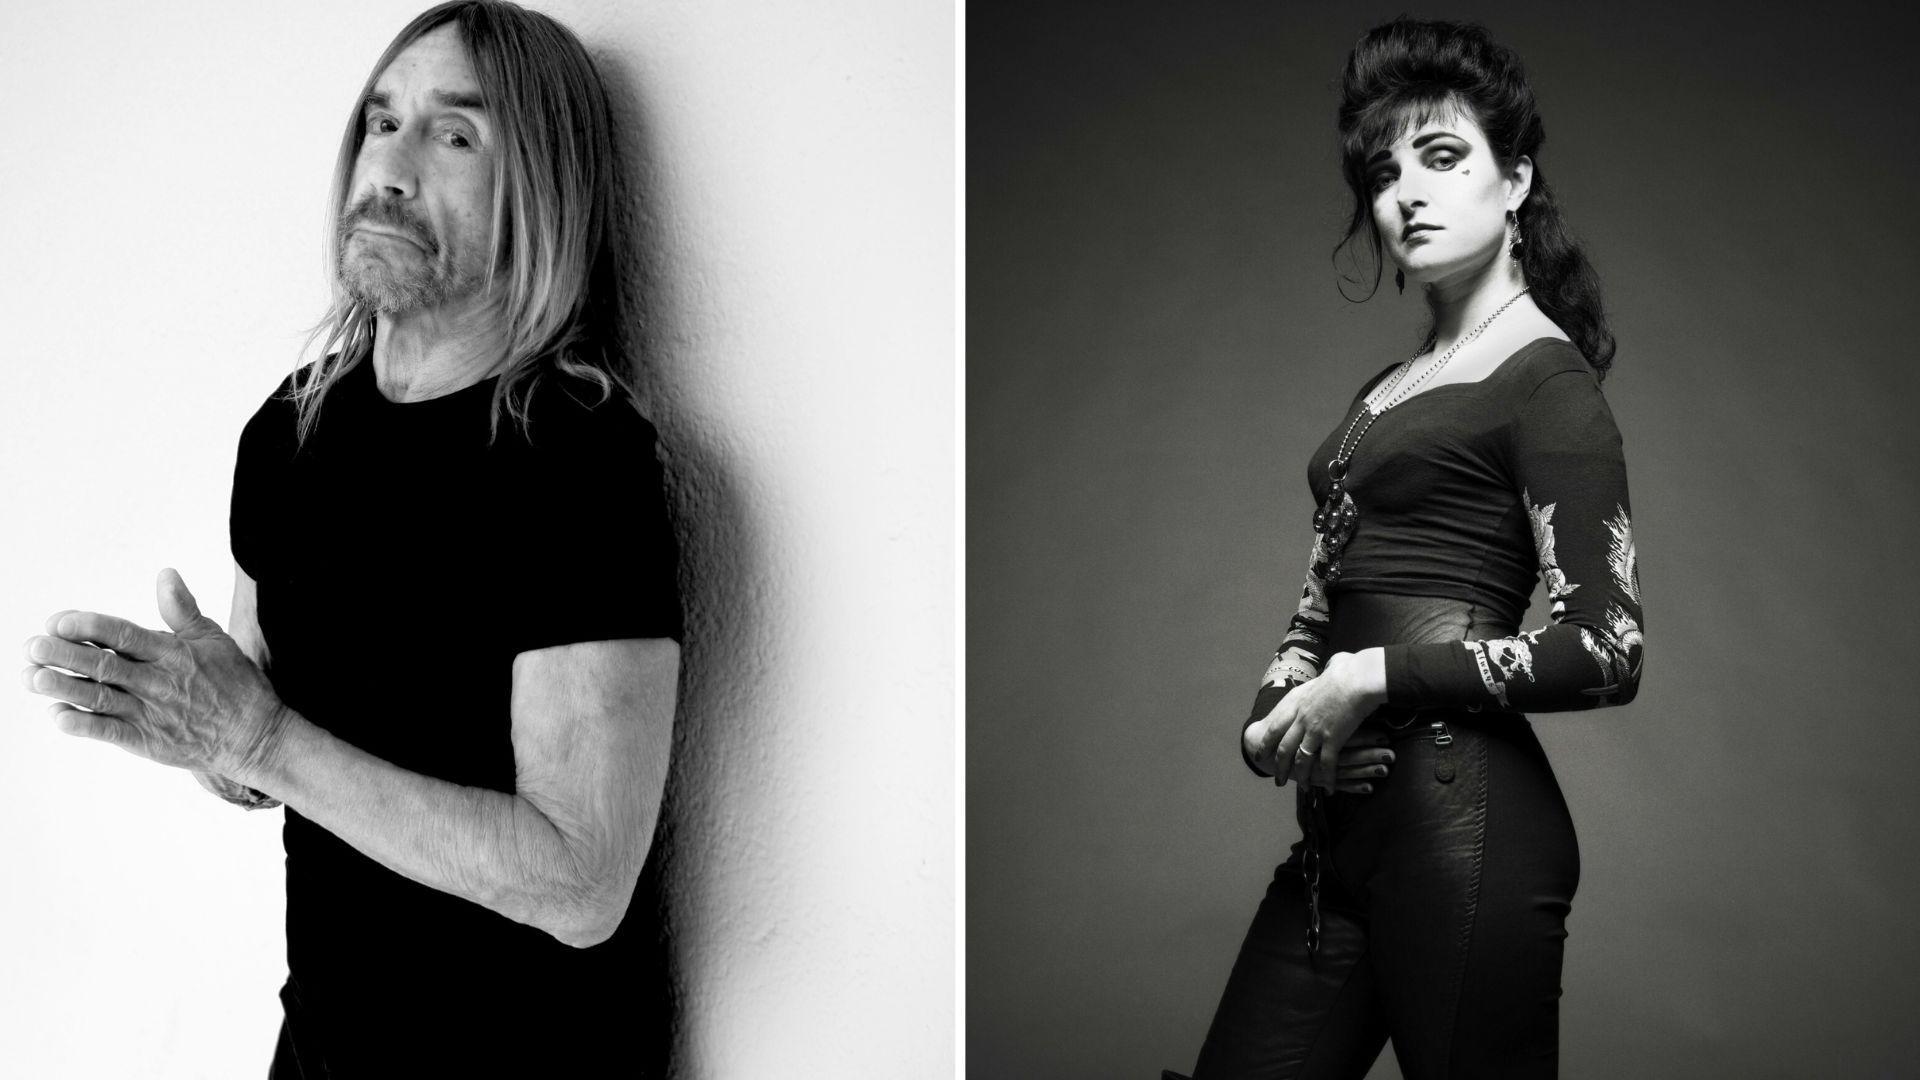 Íconos: Iggy Pop y Siouxsie Sioux lanzan nueva versión de 'The Passenger'